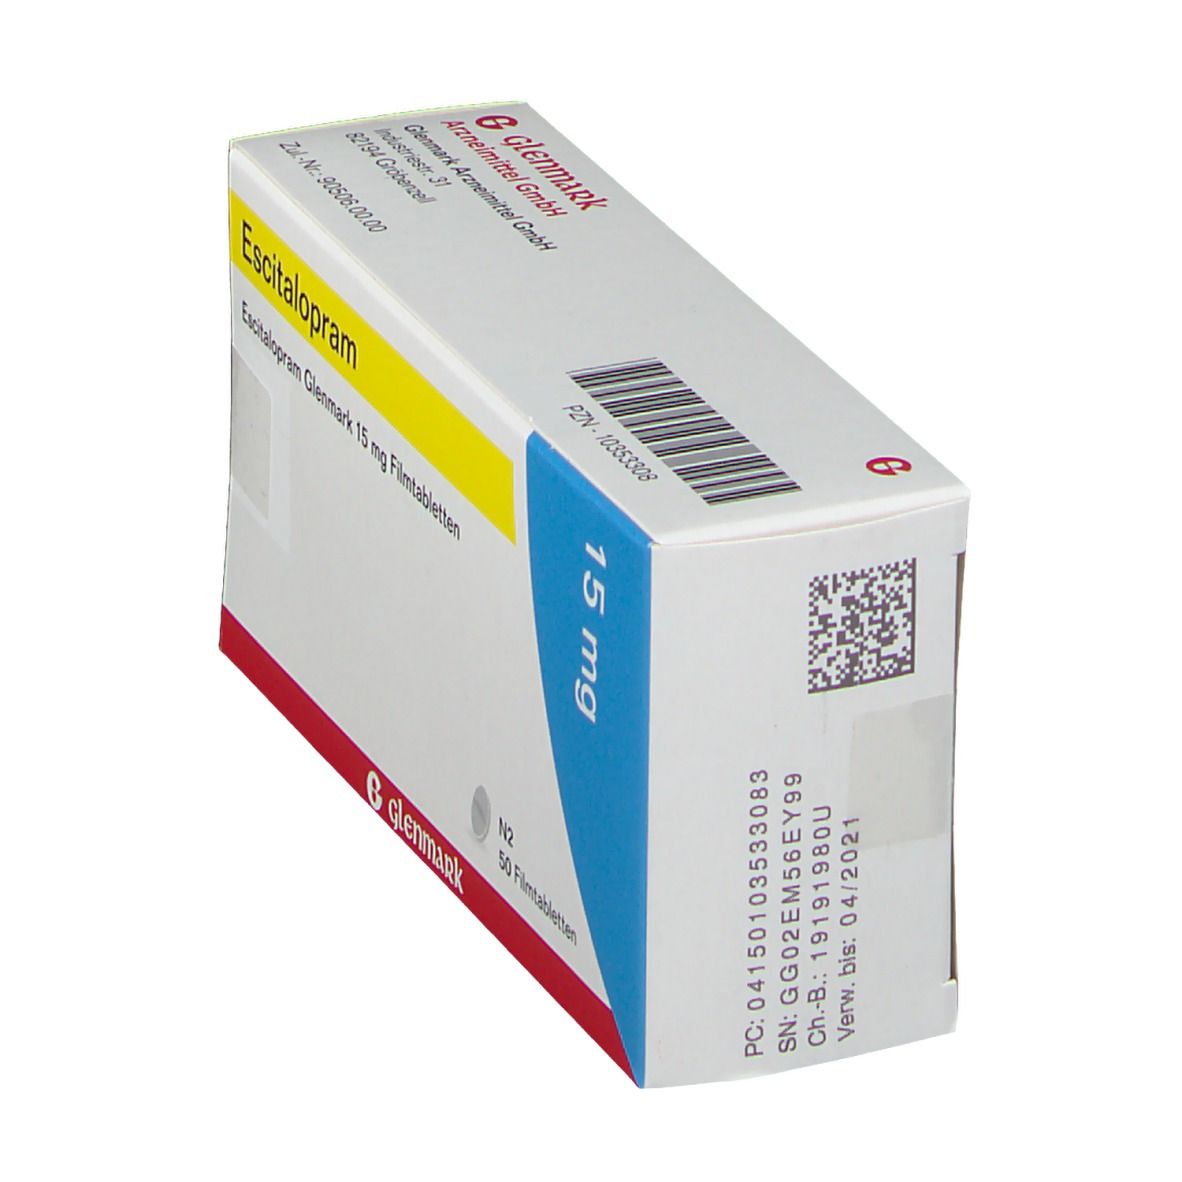 Escitalopram Glenmark 15 mg